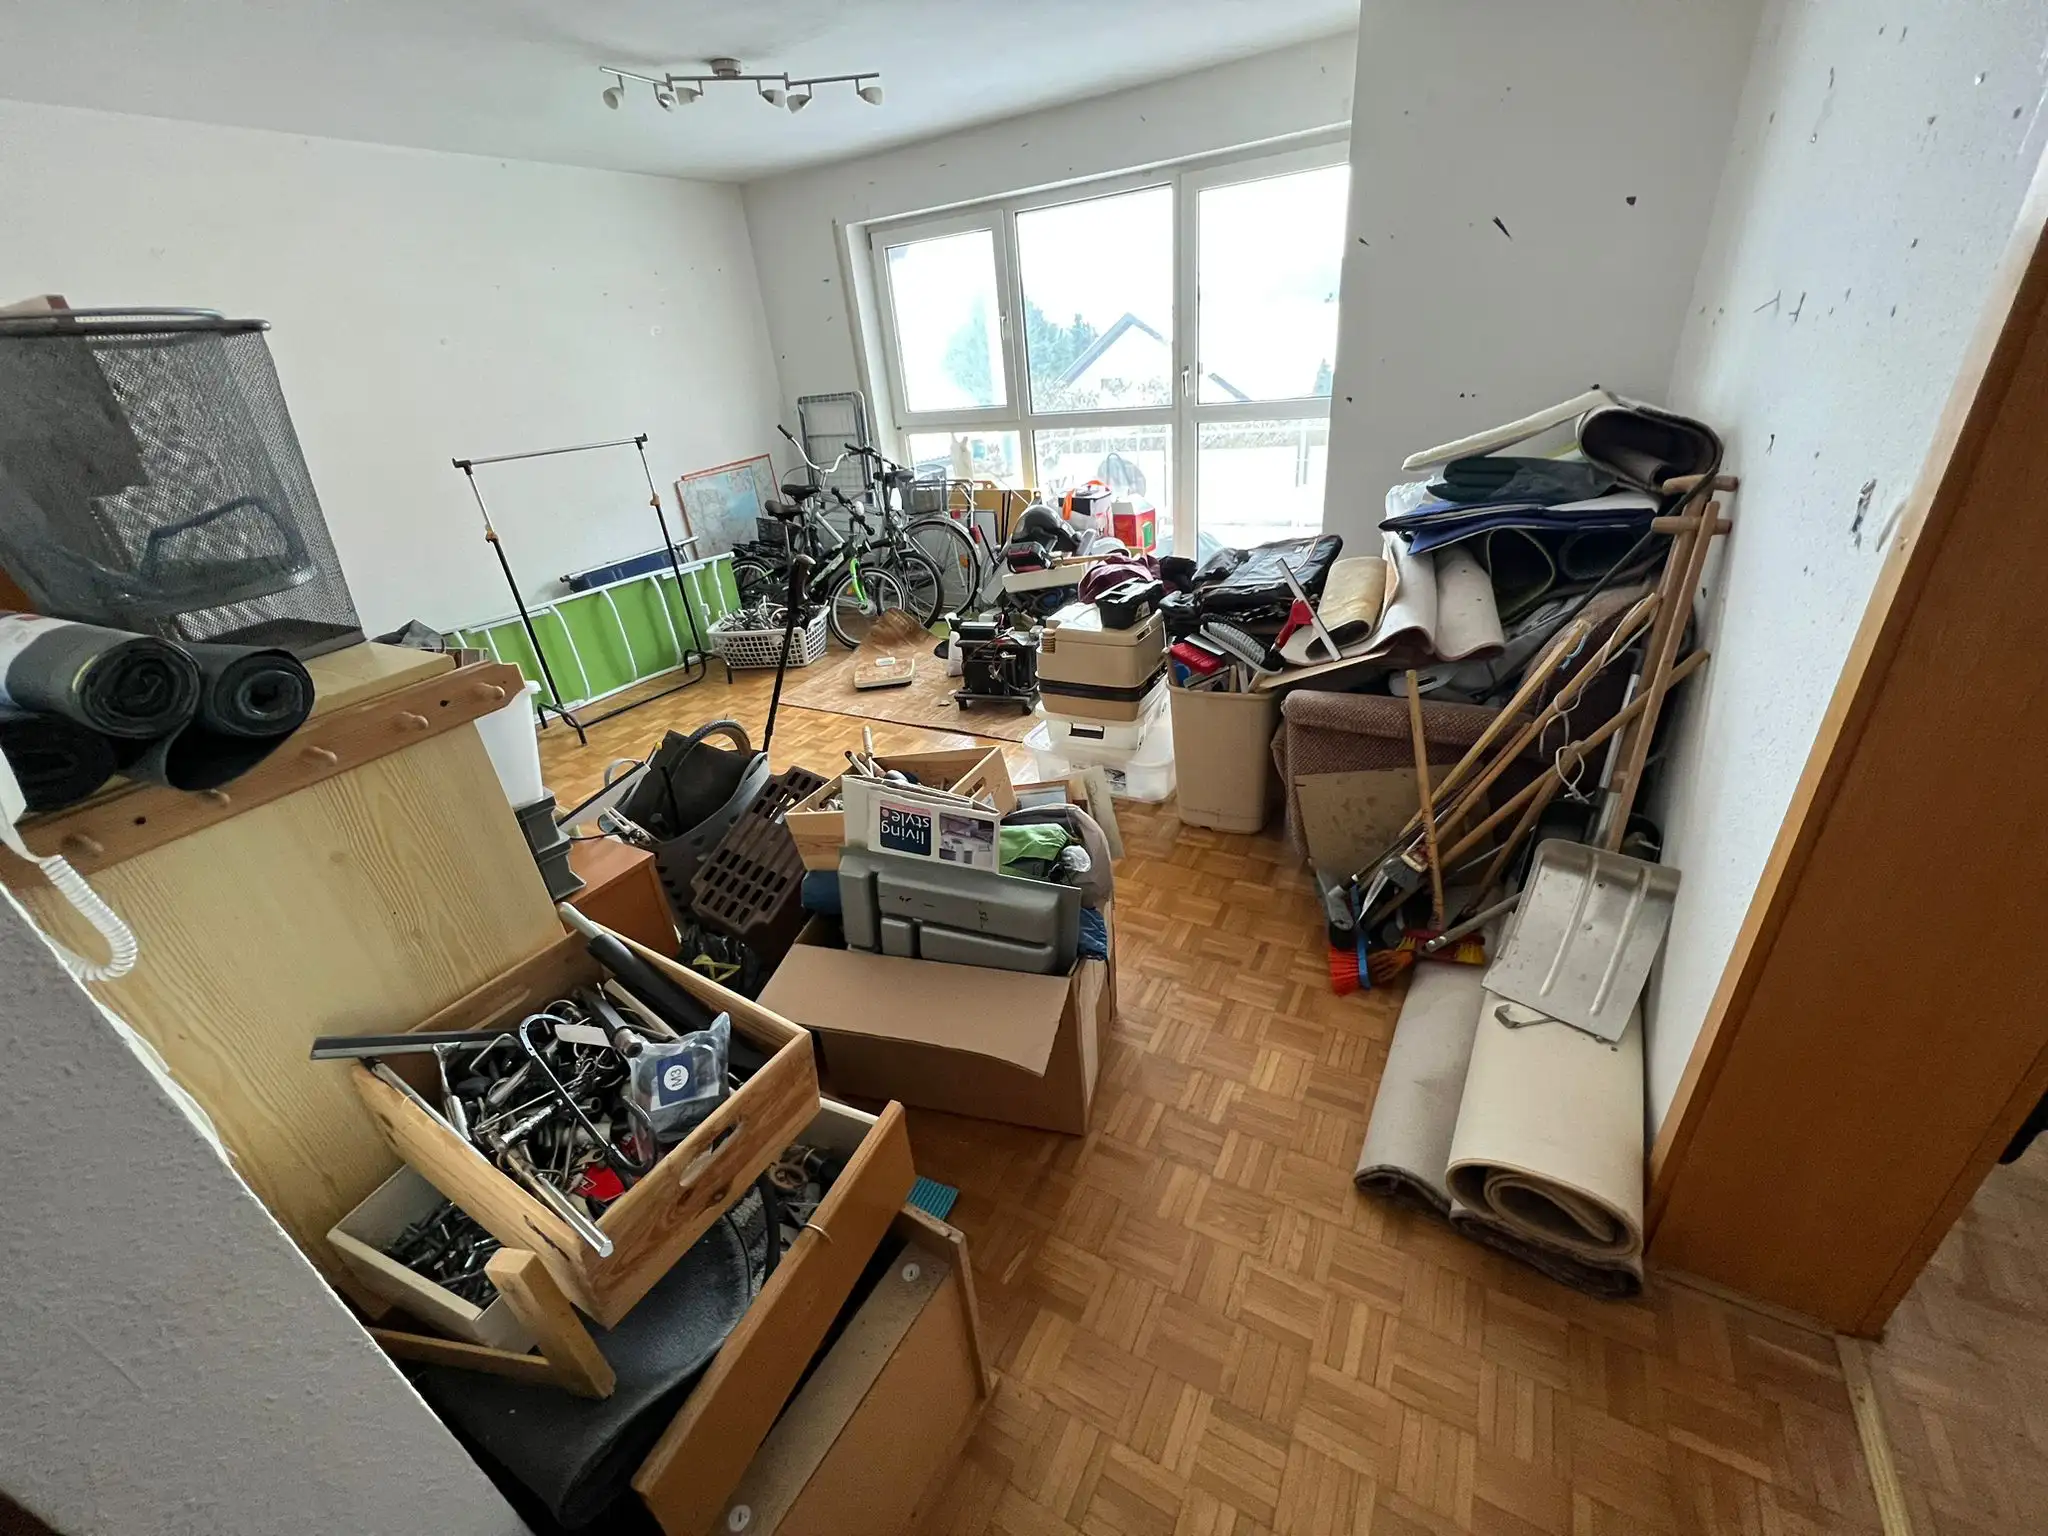 Wohnungsauflösung in Singen, Bodensee und ganz Baden-Württemberg